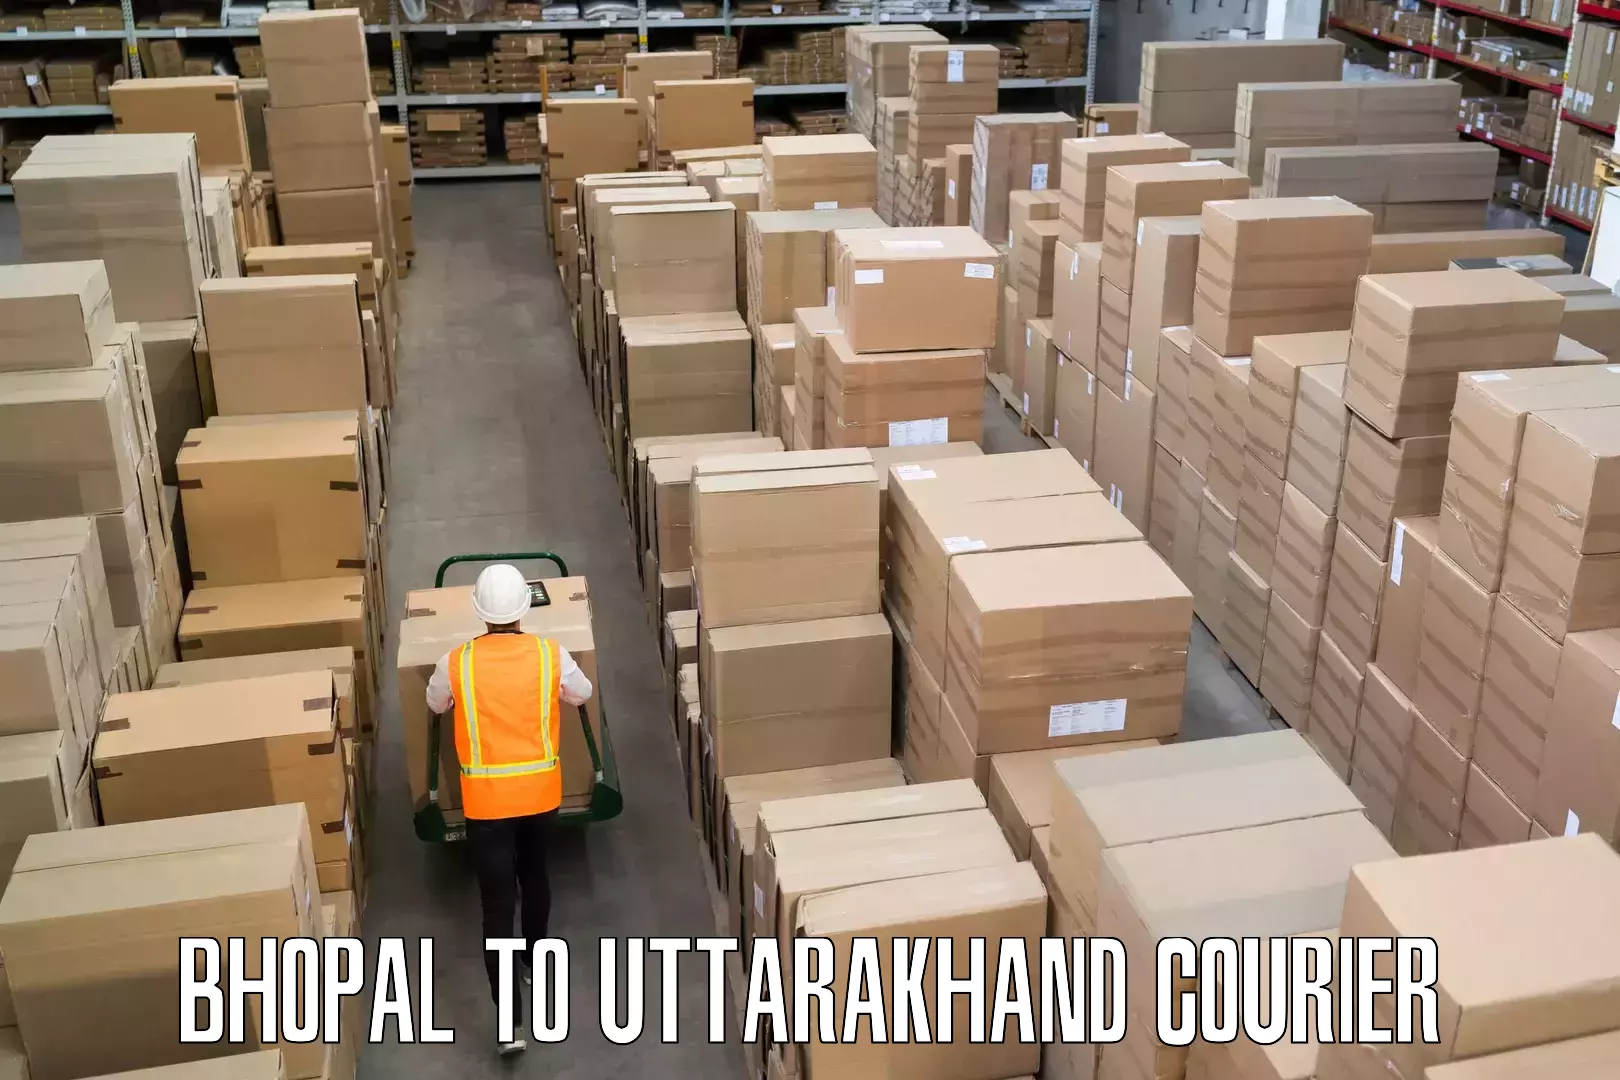 Multi-destination luggage transport Bhopal to Uttarakhand